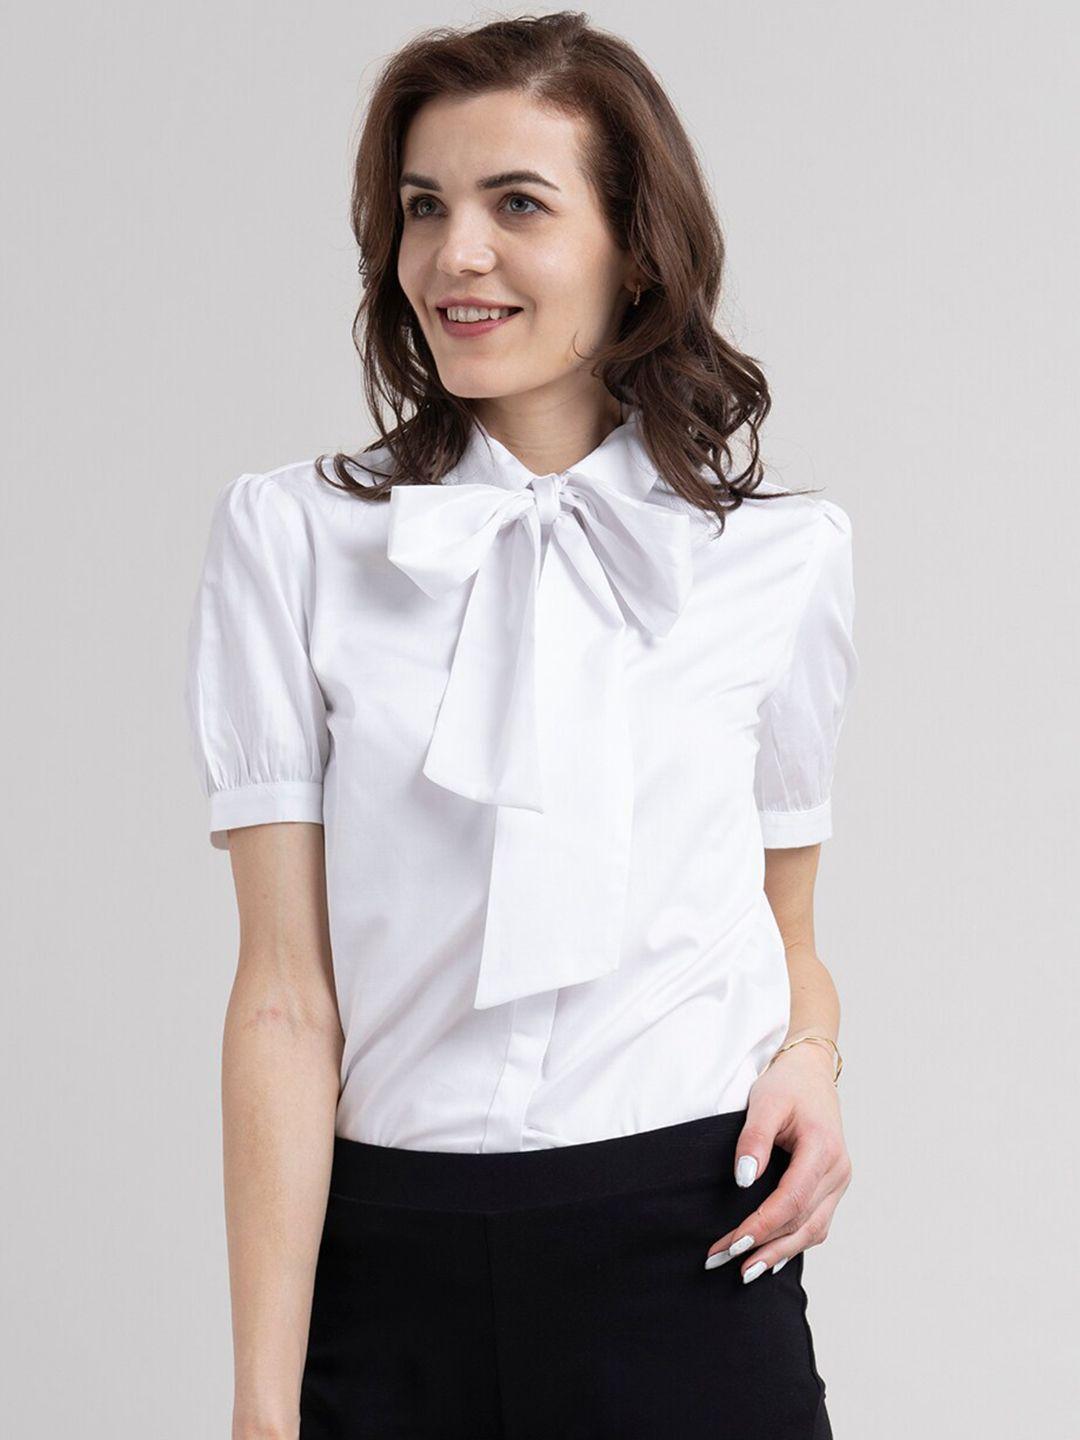 fablestreet women white comfort formal shirt